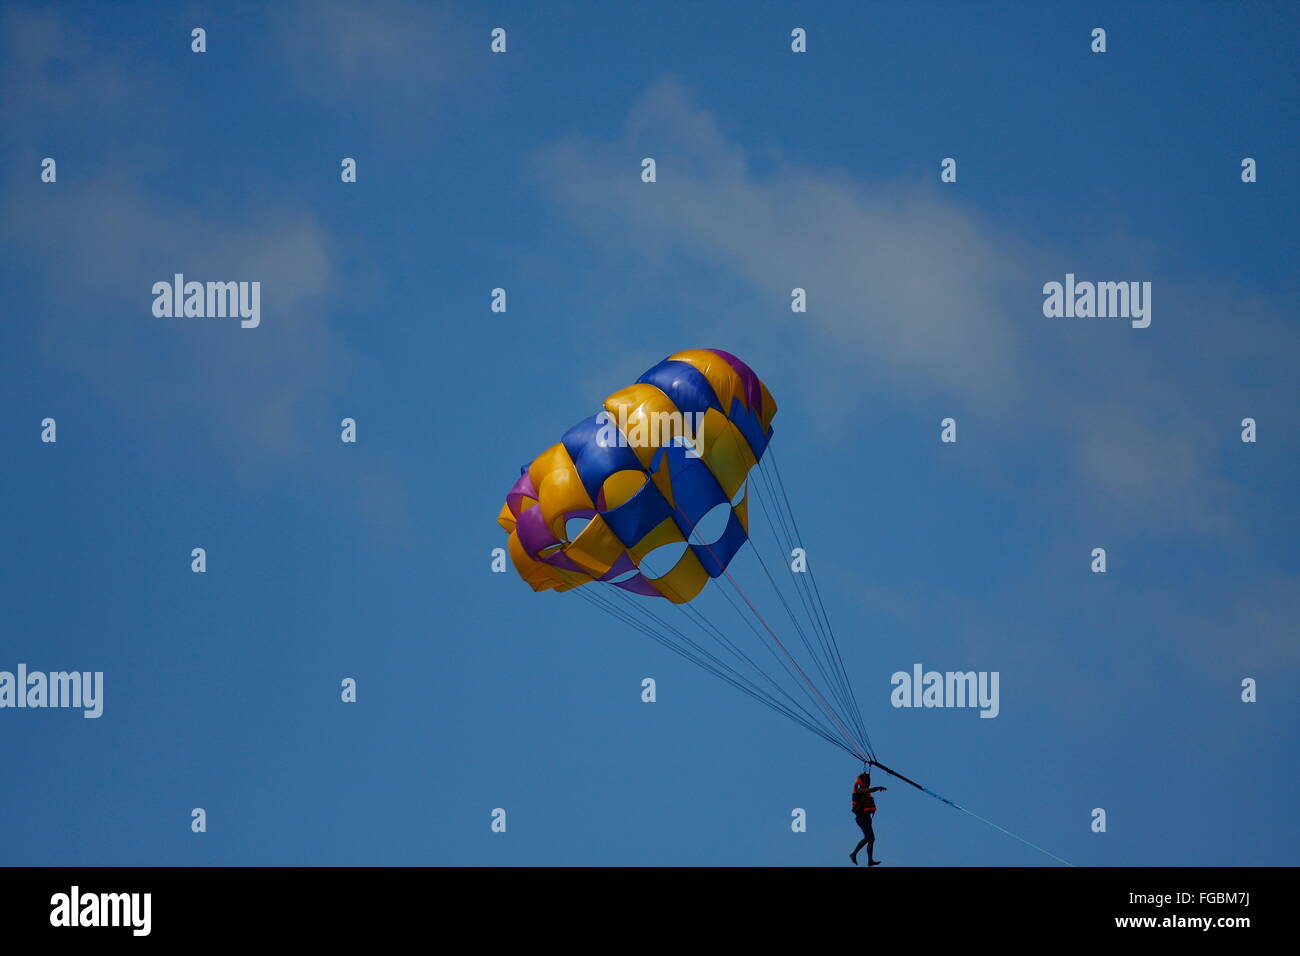 Basso Angolo di visione della persona Skydiving con paracadute contro Sky Foto Stock